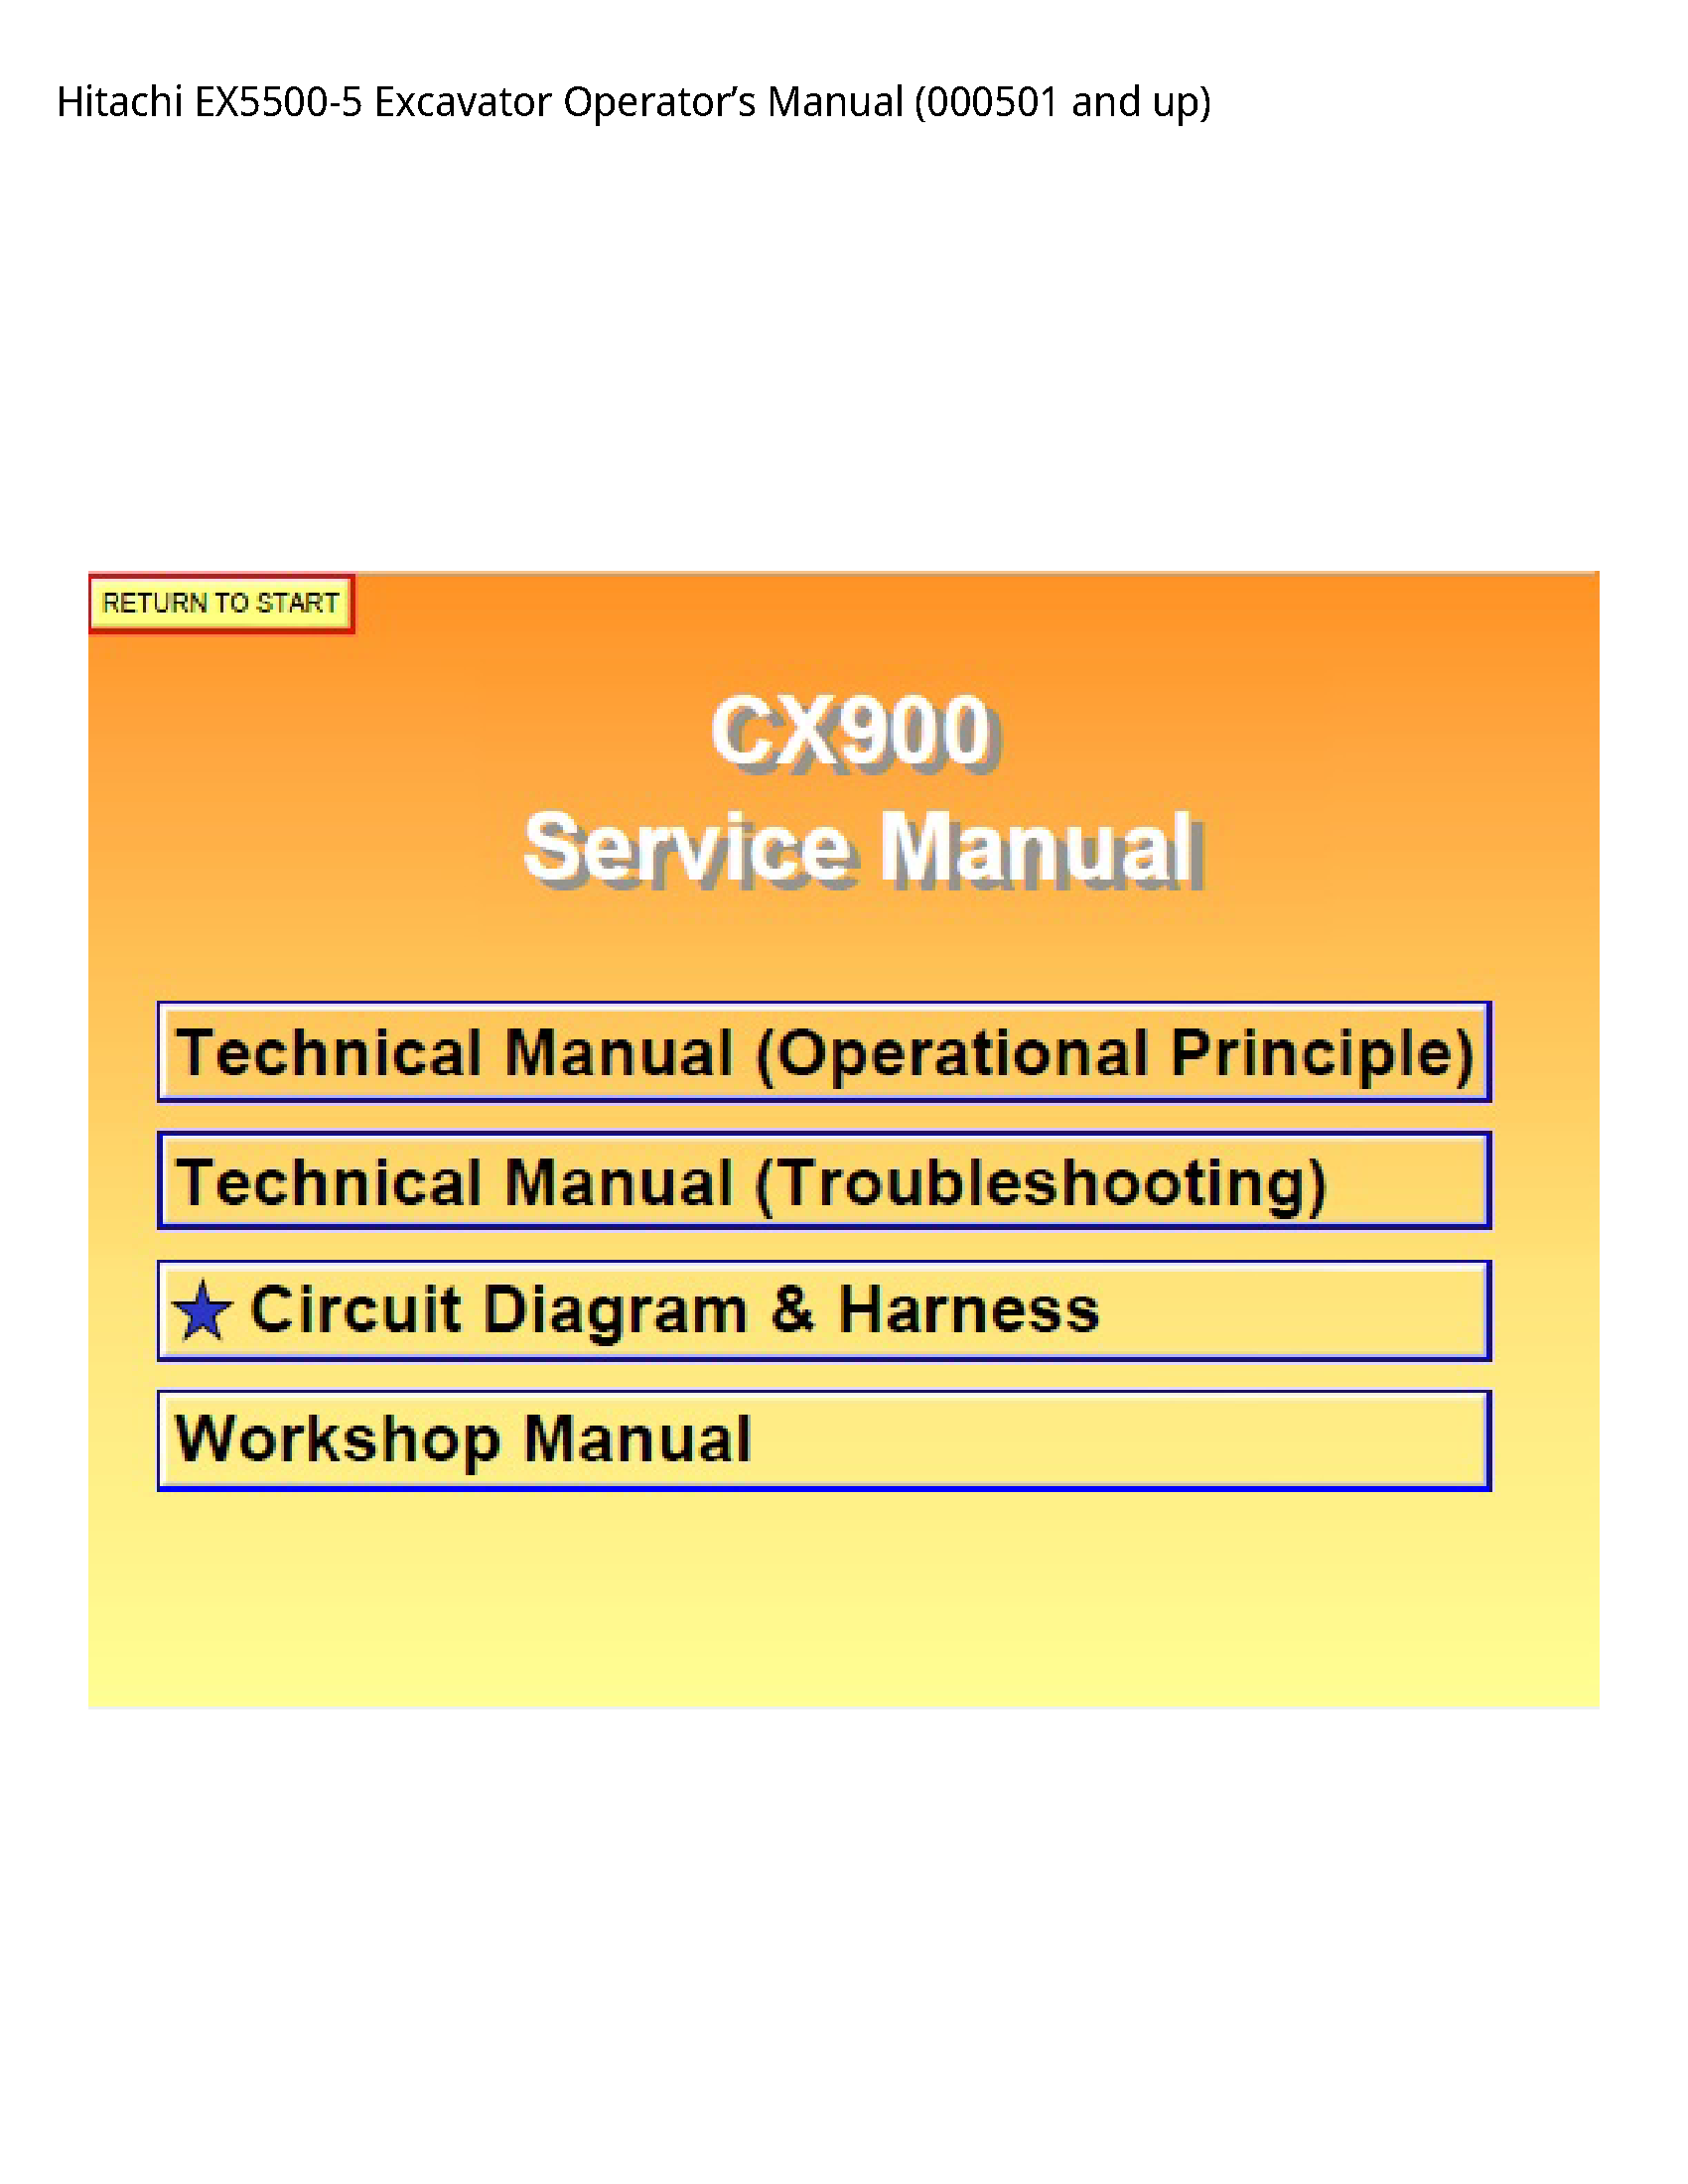 Hitachi EX5500-5 Excavator Operator’s manual